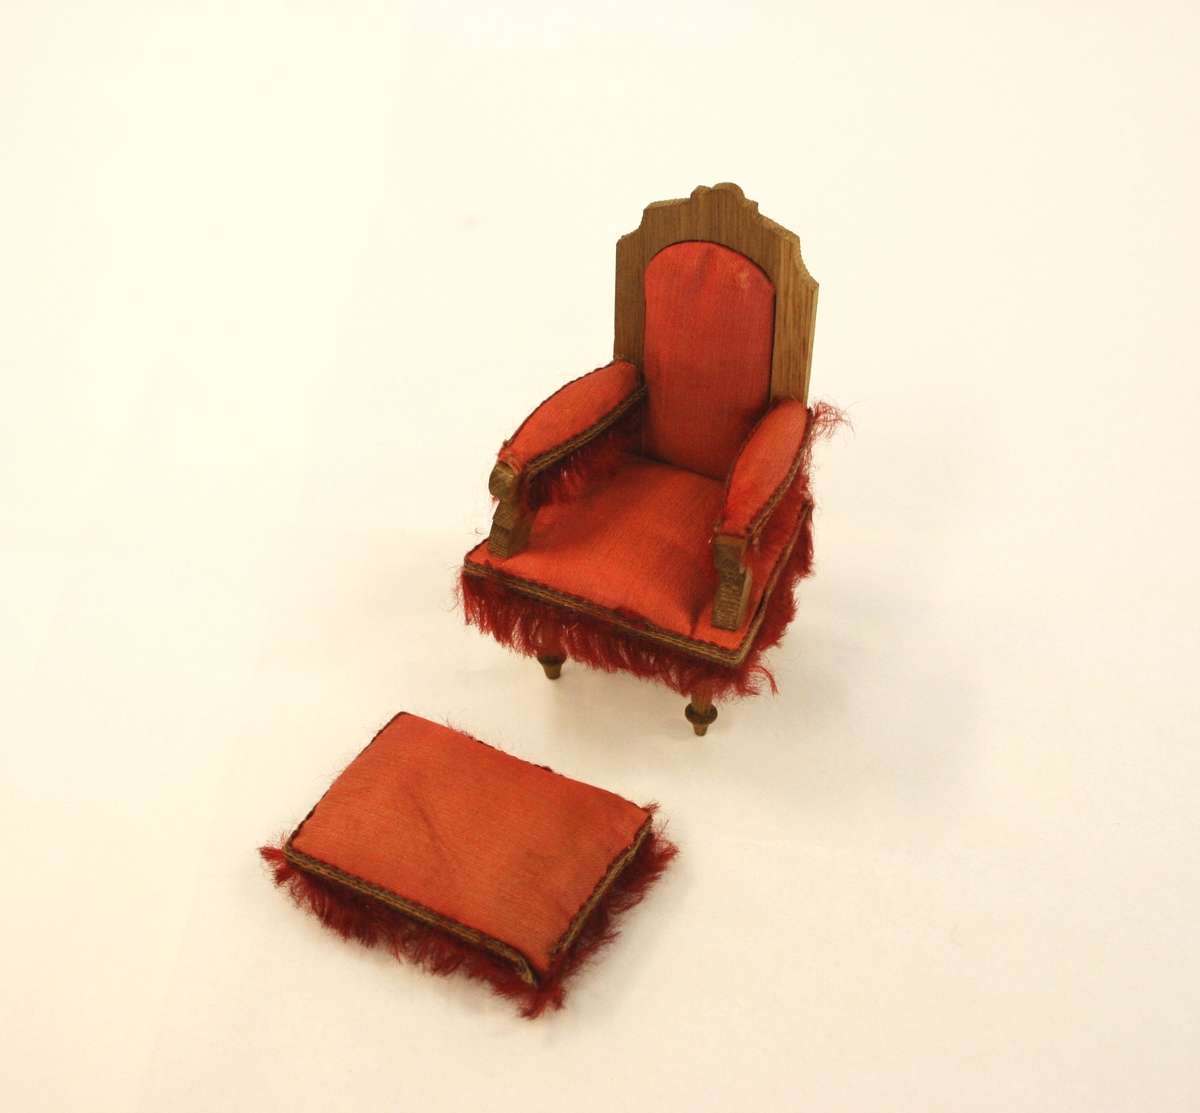 Dukkemøblement 9 deler: 
A) Sofa i rødt silke på setet, rygg og armlener (lener med pøller). Høy rygg med utskjært toppgavl i tre. Røde frynser nederst i fronten, på sidene og røde dusker på pøllene. 
B) Lenestol med frynser i front på sidene og på armlenene. Høy rygg med rødt silke på setet, ryggen og armlener. 
C) Stol med rødt silke på setet og røde frynser rundt stolsetet. Dreide forben, høy, svunget rygg med løvsagarbeid.
D) Bord i tre med avrunede sider, fire freide ben hvorav et ben er surret øverst i hvit bandasje. 
E) Konsollspeil med marmorplate og gavl med trespir med fire lave kuleføtter. Speil med utskjært treramme. Dreide ben fra marmorplaten ned til understellet.
F) Fotkrakk i rødt silke med røde frynser rundt hele. Nederst er fire lave kuleøftter.